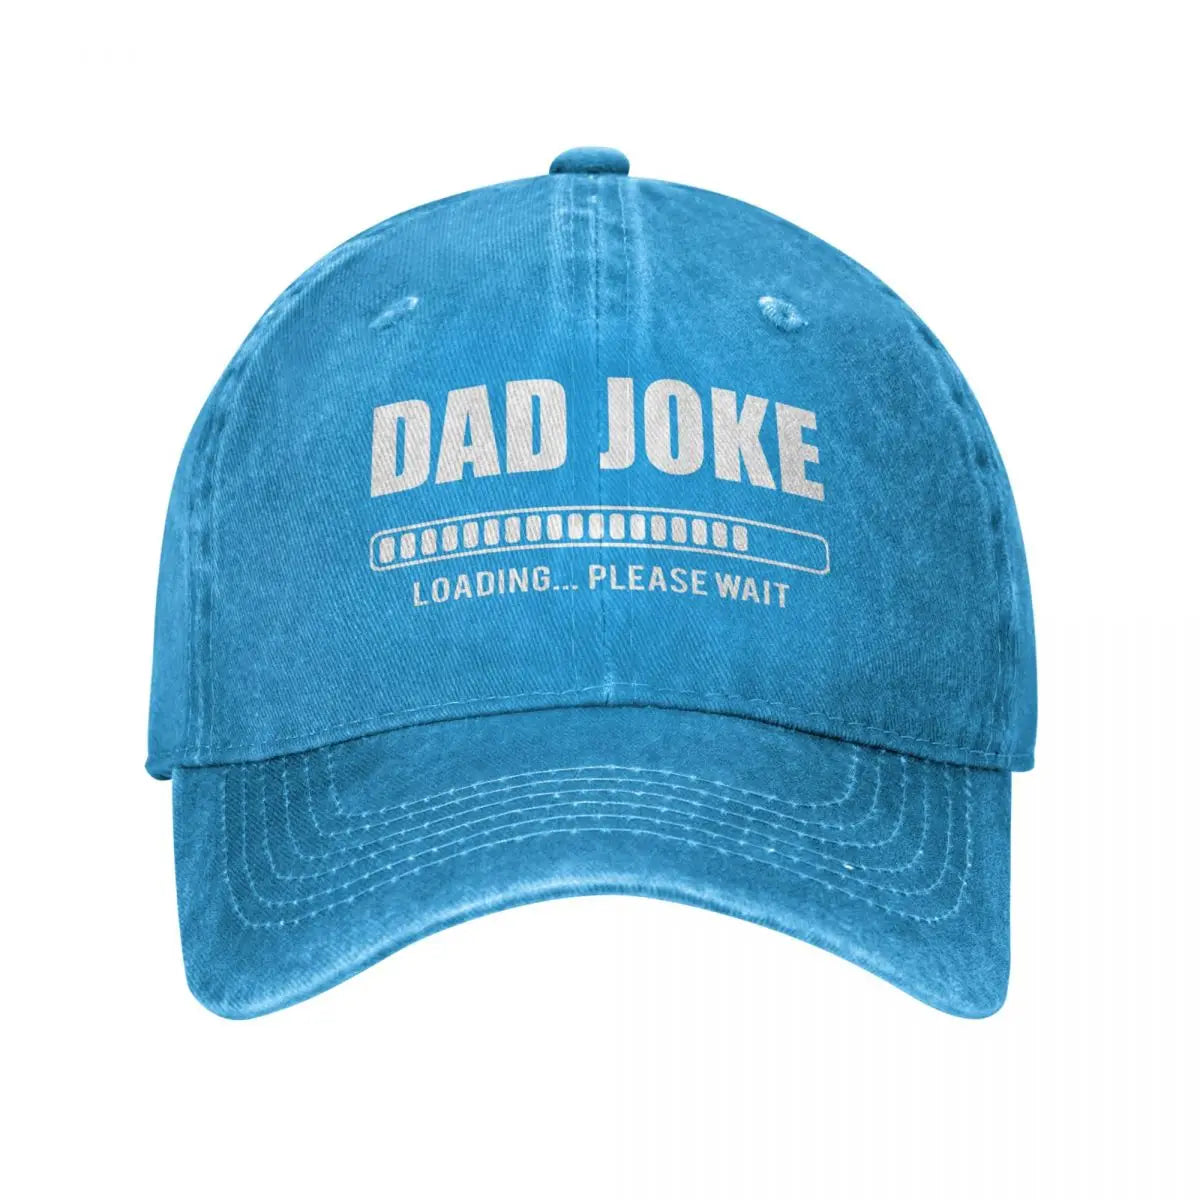 Vintage Style Dad Joke Loading Baseball Cap - hats from Dear Cece - Just £16.99! Shop now at Dear Cece